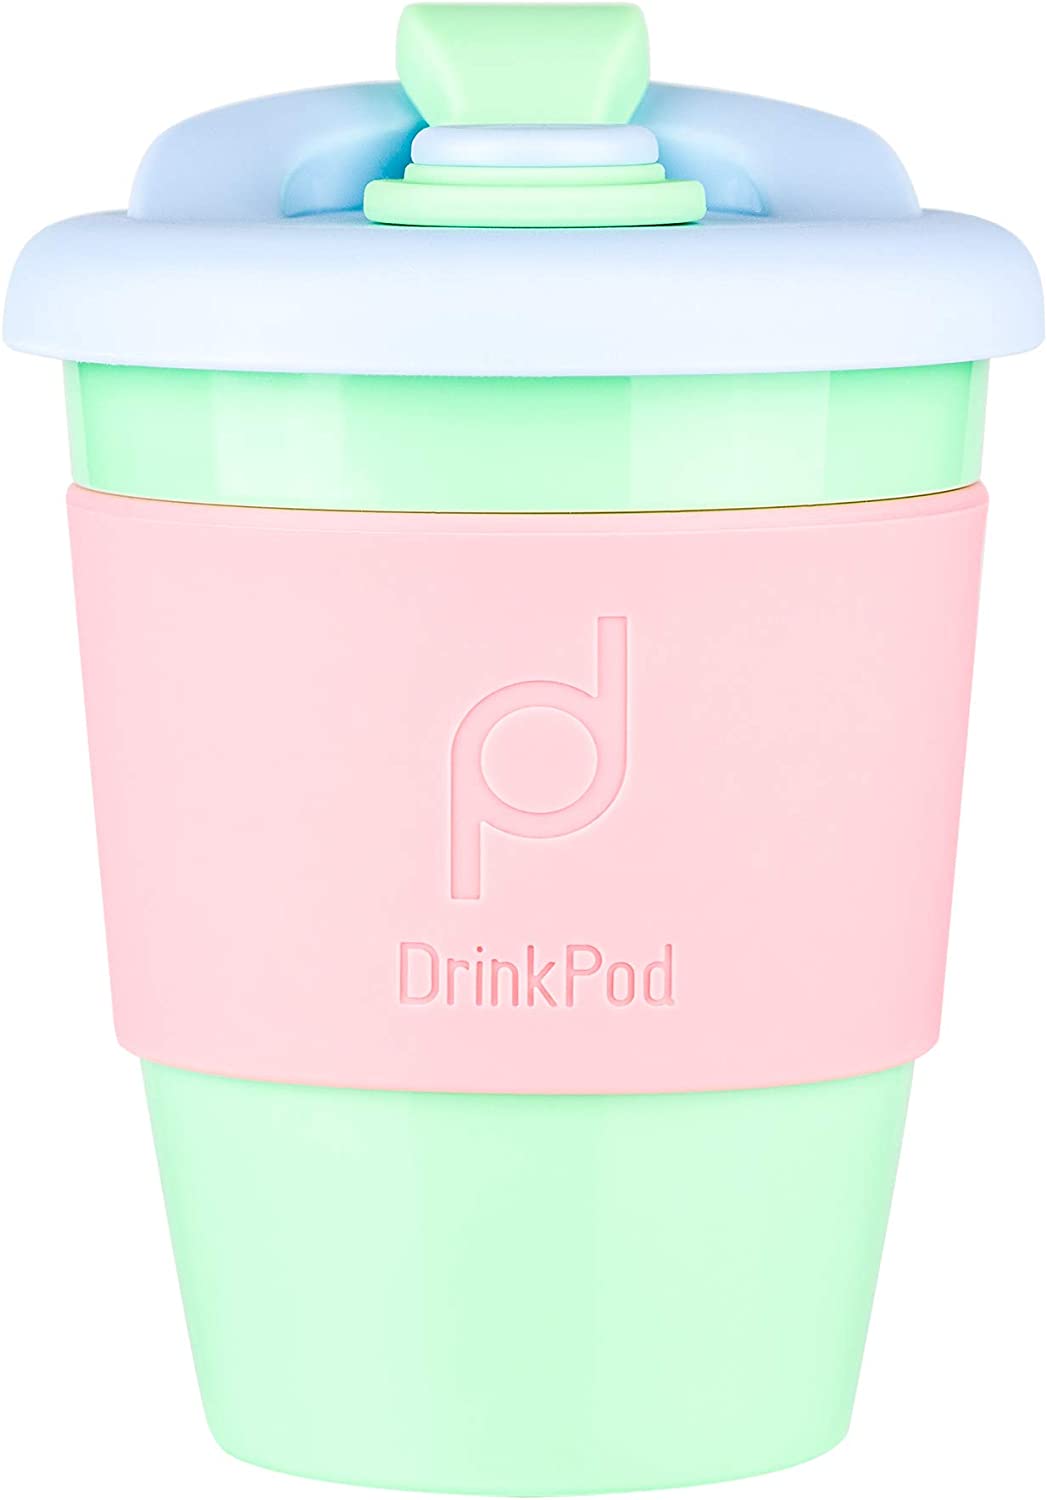 DrinkPod Reusable BPA Free 340ml 12oz Plastic Coffee Mug Travel Mug - GREEN DREAM, GREEN